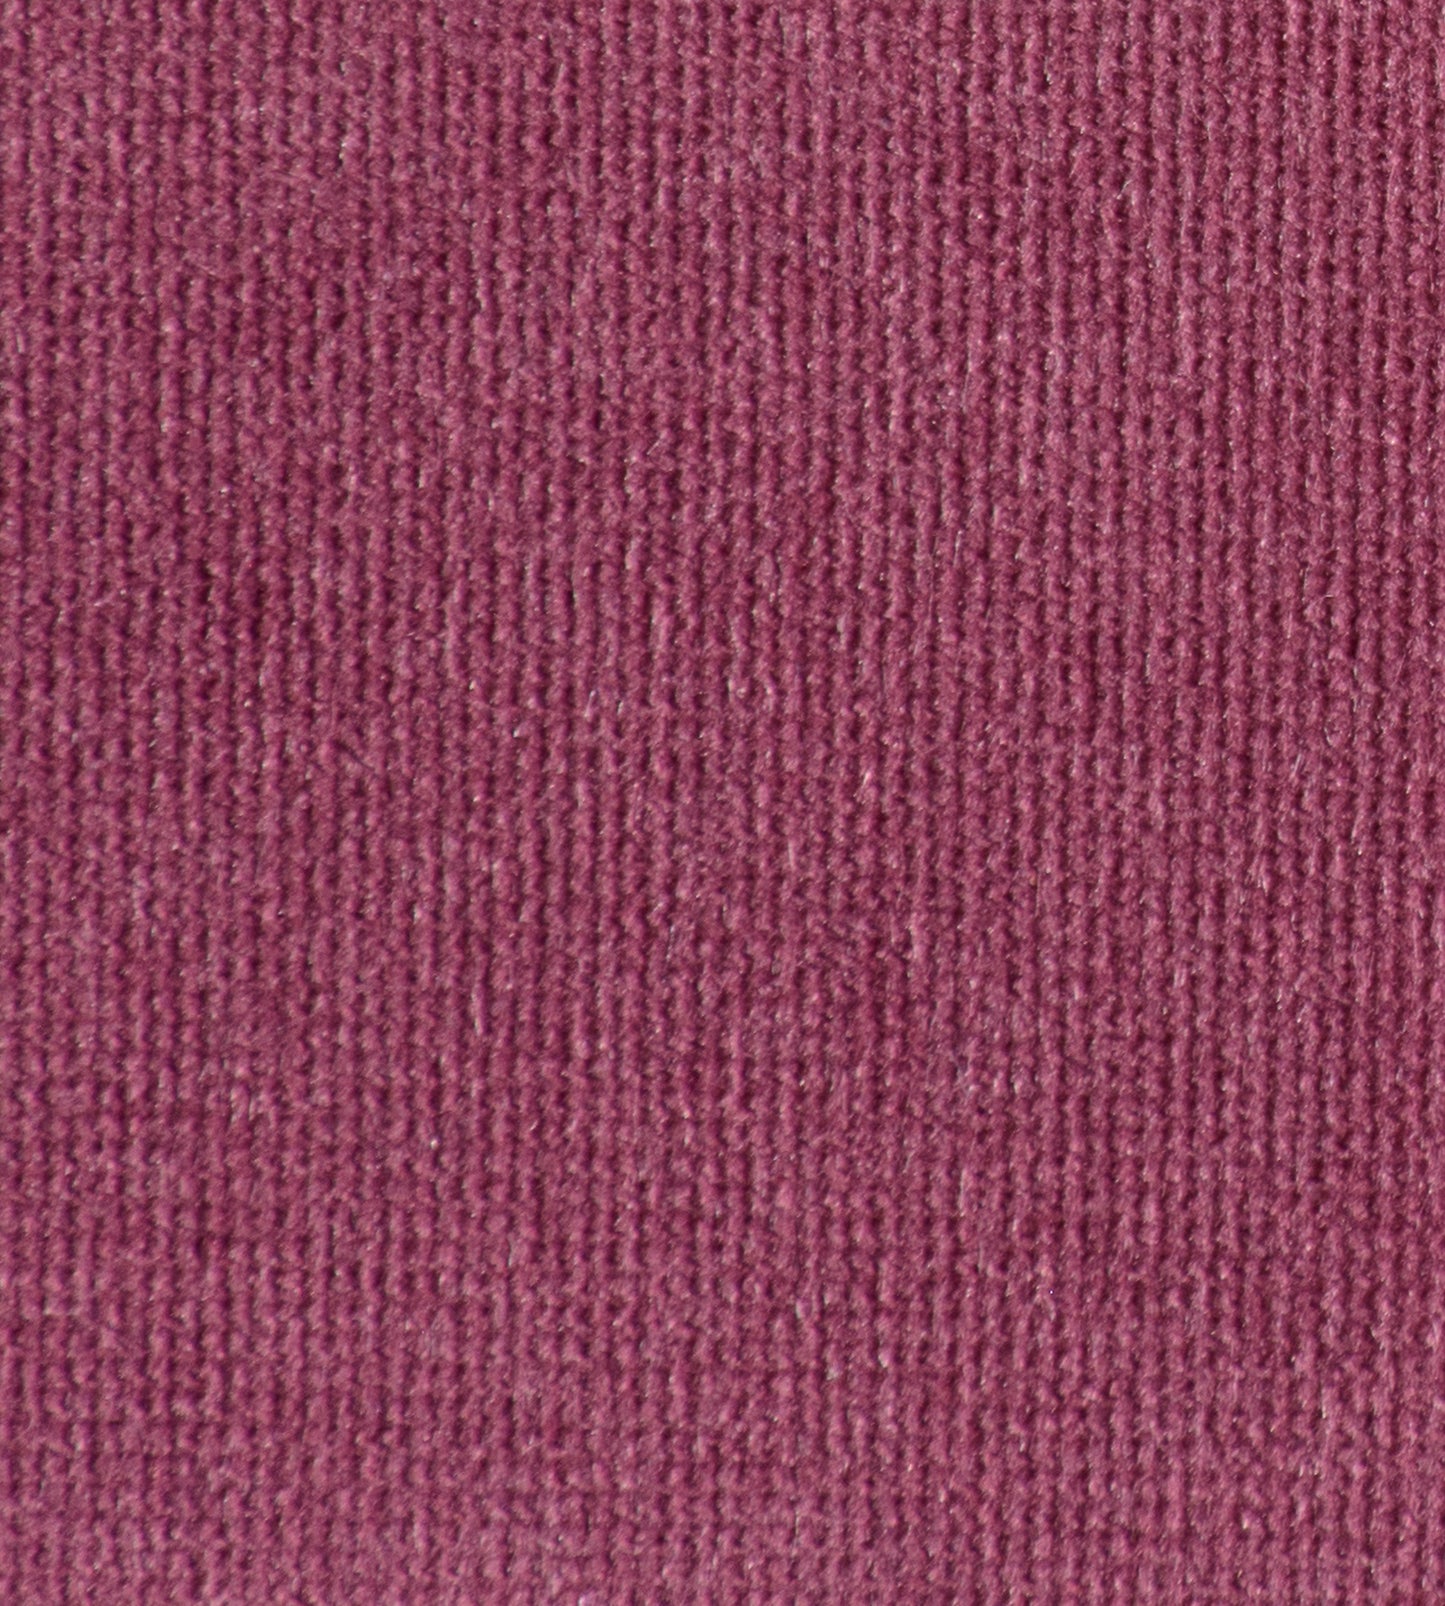 Purchase Old World Weavers Fabric Item# VP 0877GLAM, Glamour Velvet Plum 1